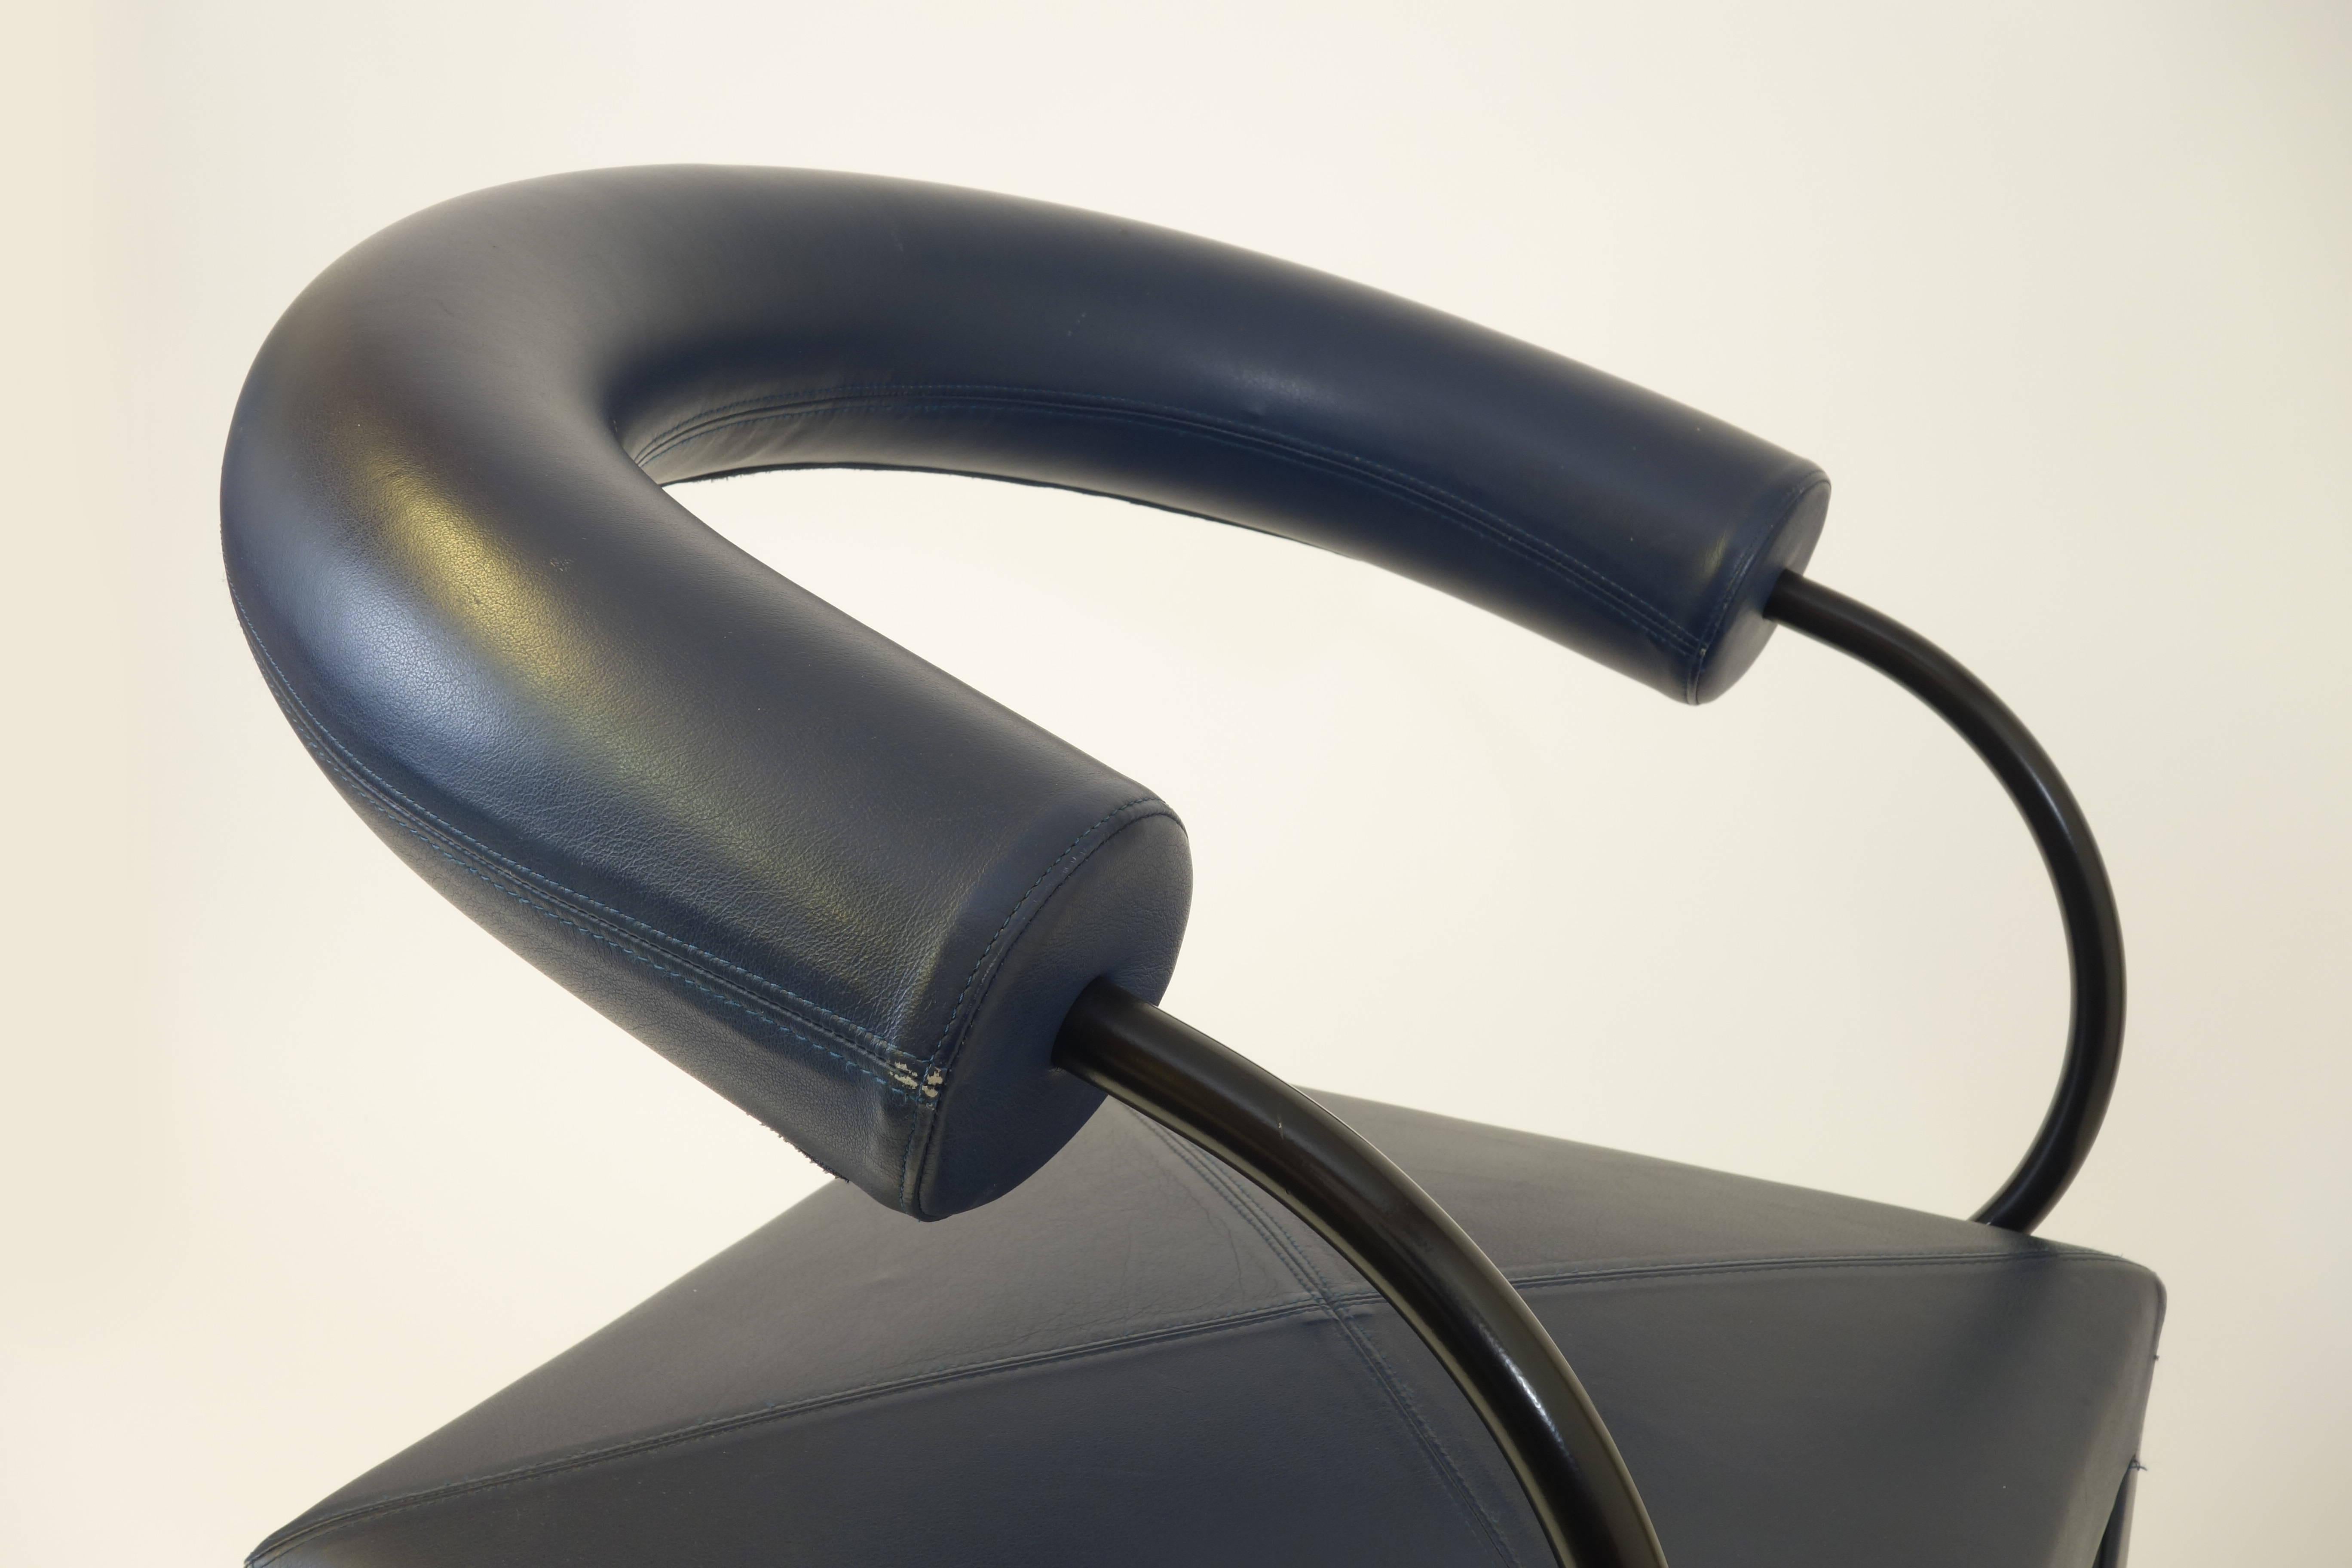 Sessel in der seltenen Version mit gebogener Rückenlehne, entworfen von Paolo Piva. Der Sitzbezug ist aus dunkelblauem Leder gefertigt, während alle Metallteile aus geschwärztem Metall bestehen, was den besonderen Charakter dieses Objekts